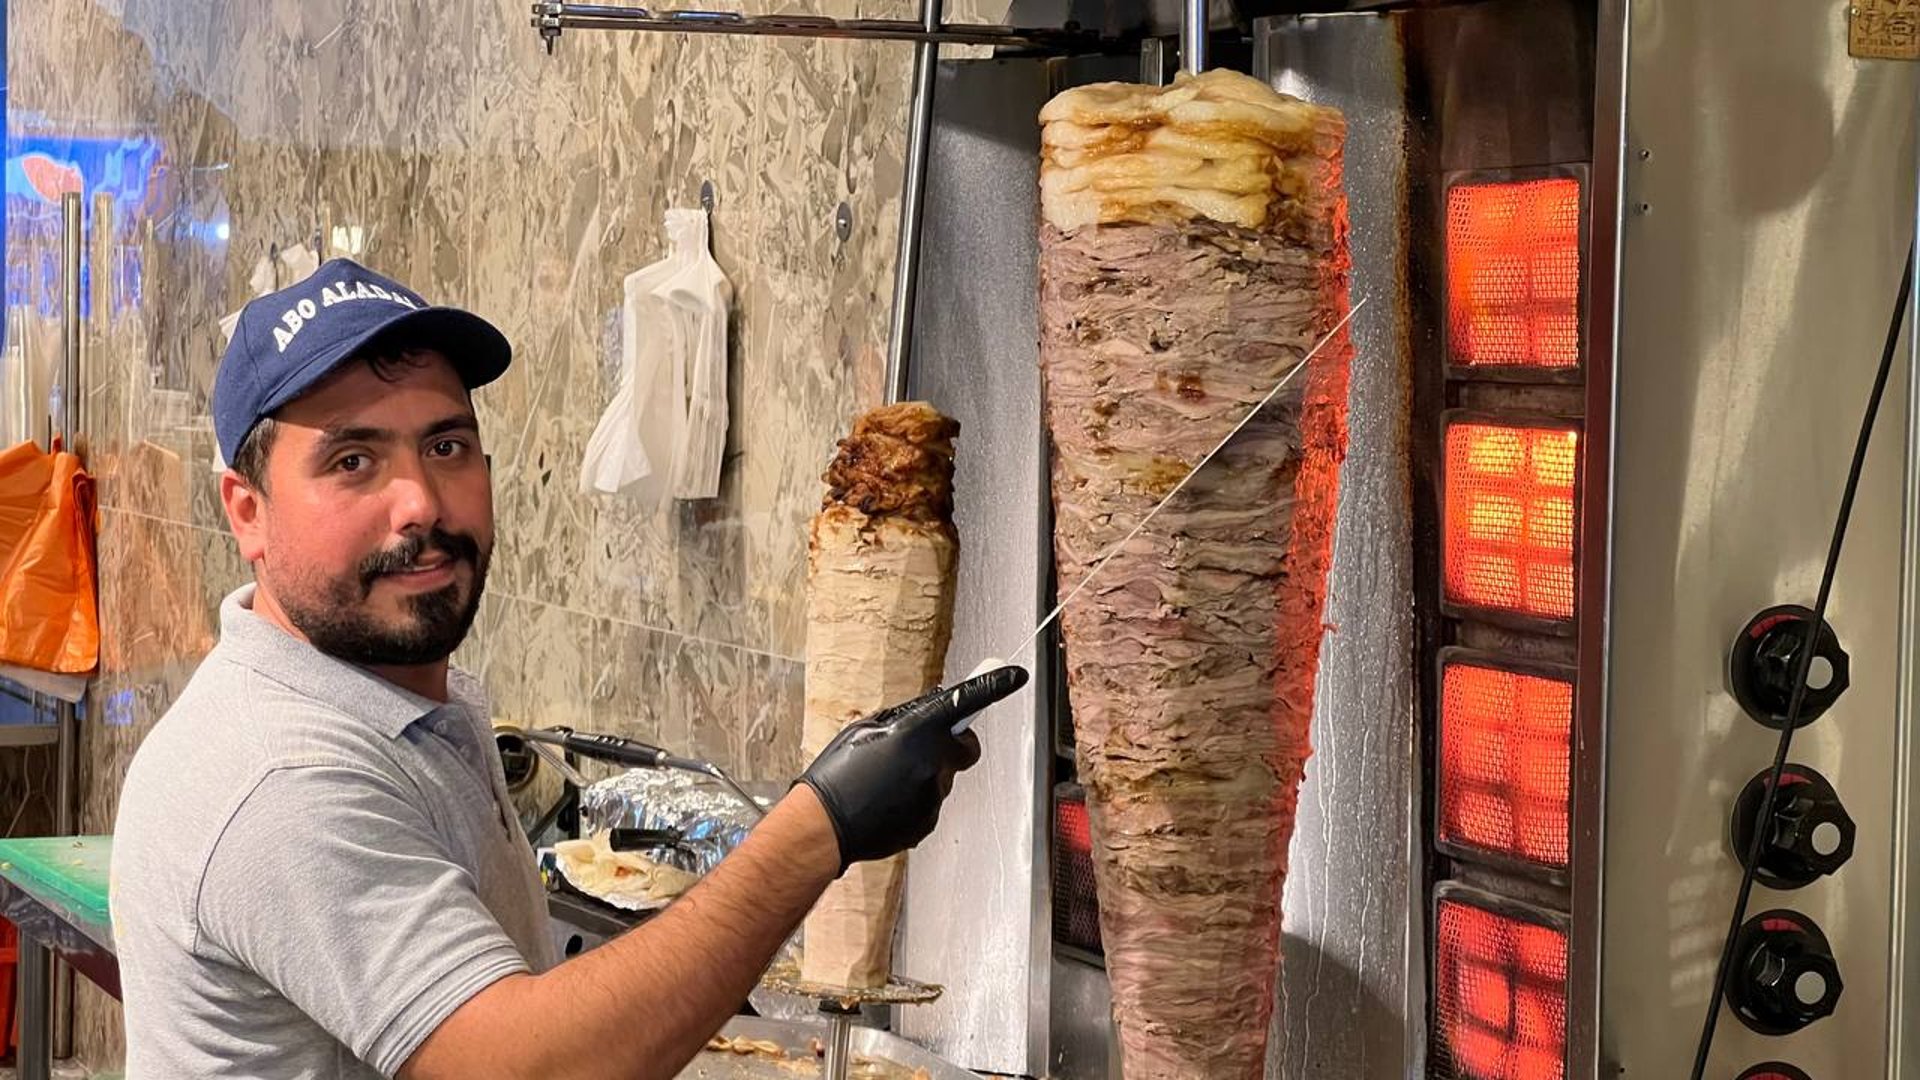 أبو العدالة” أقدم مطاعم الغدير في بغداد.. كيف حافظ على زبائنه منذ 1991؟ »  +964